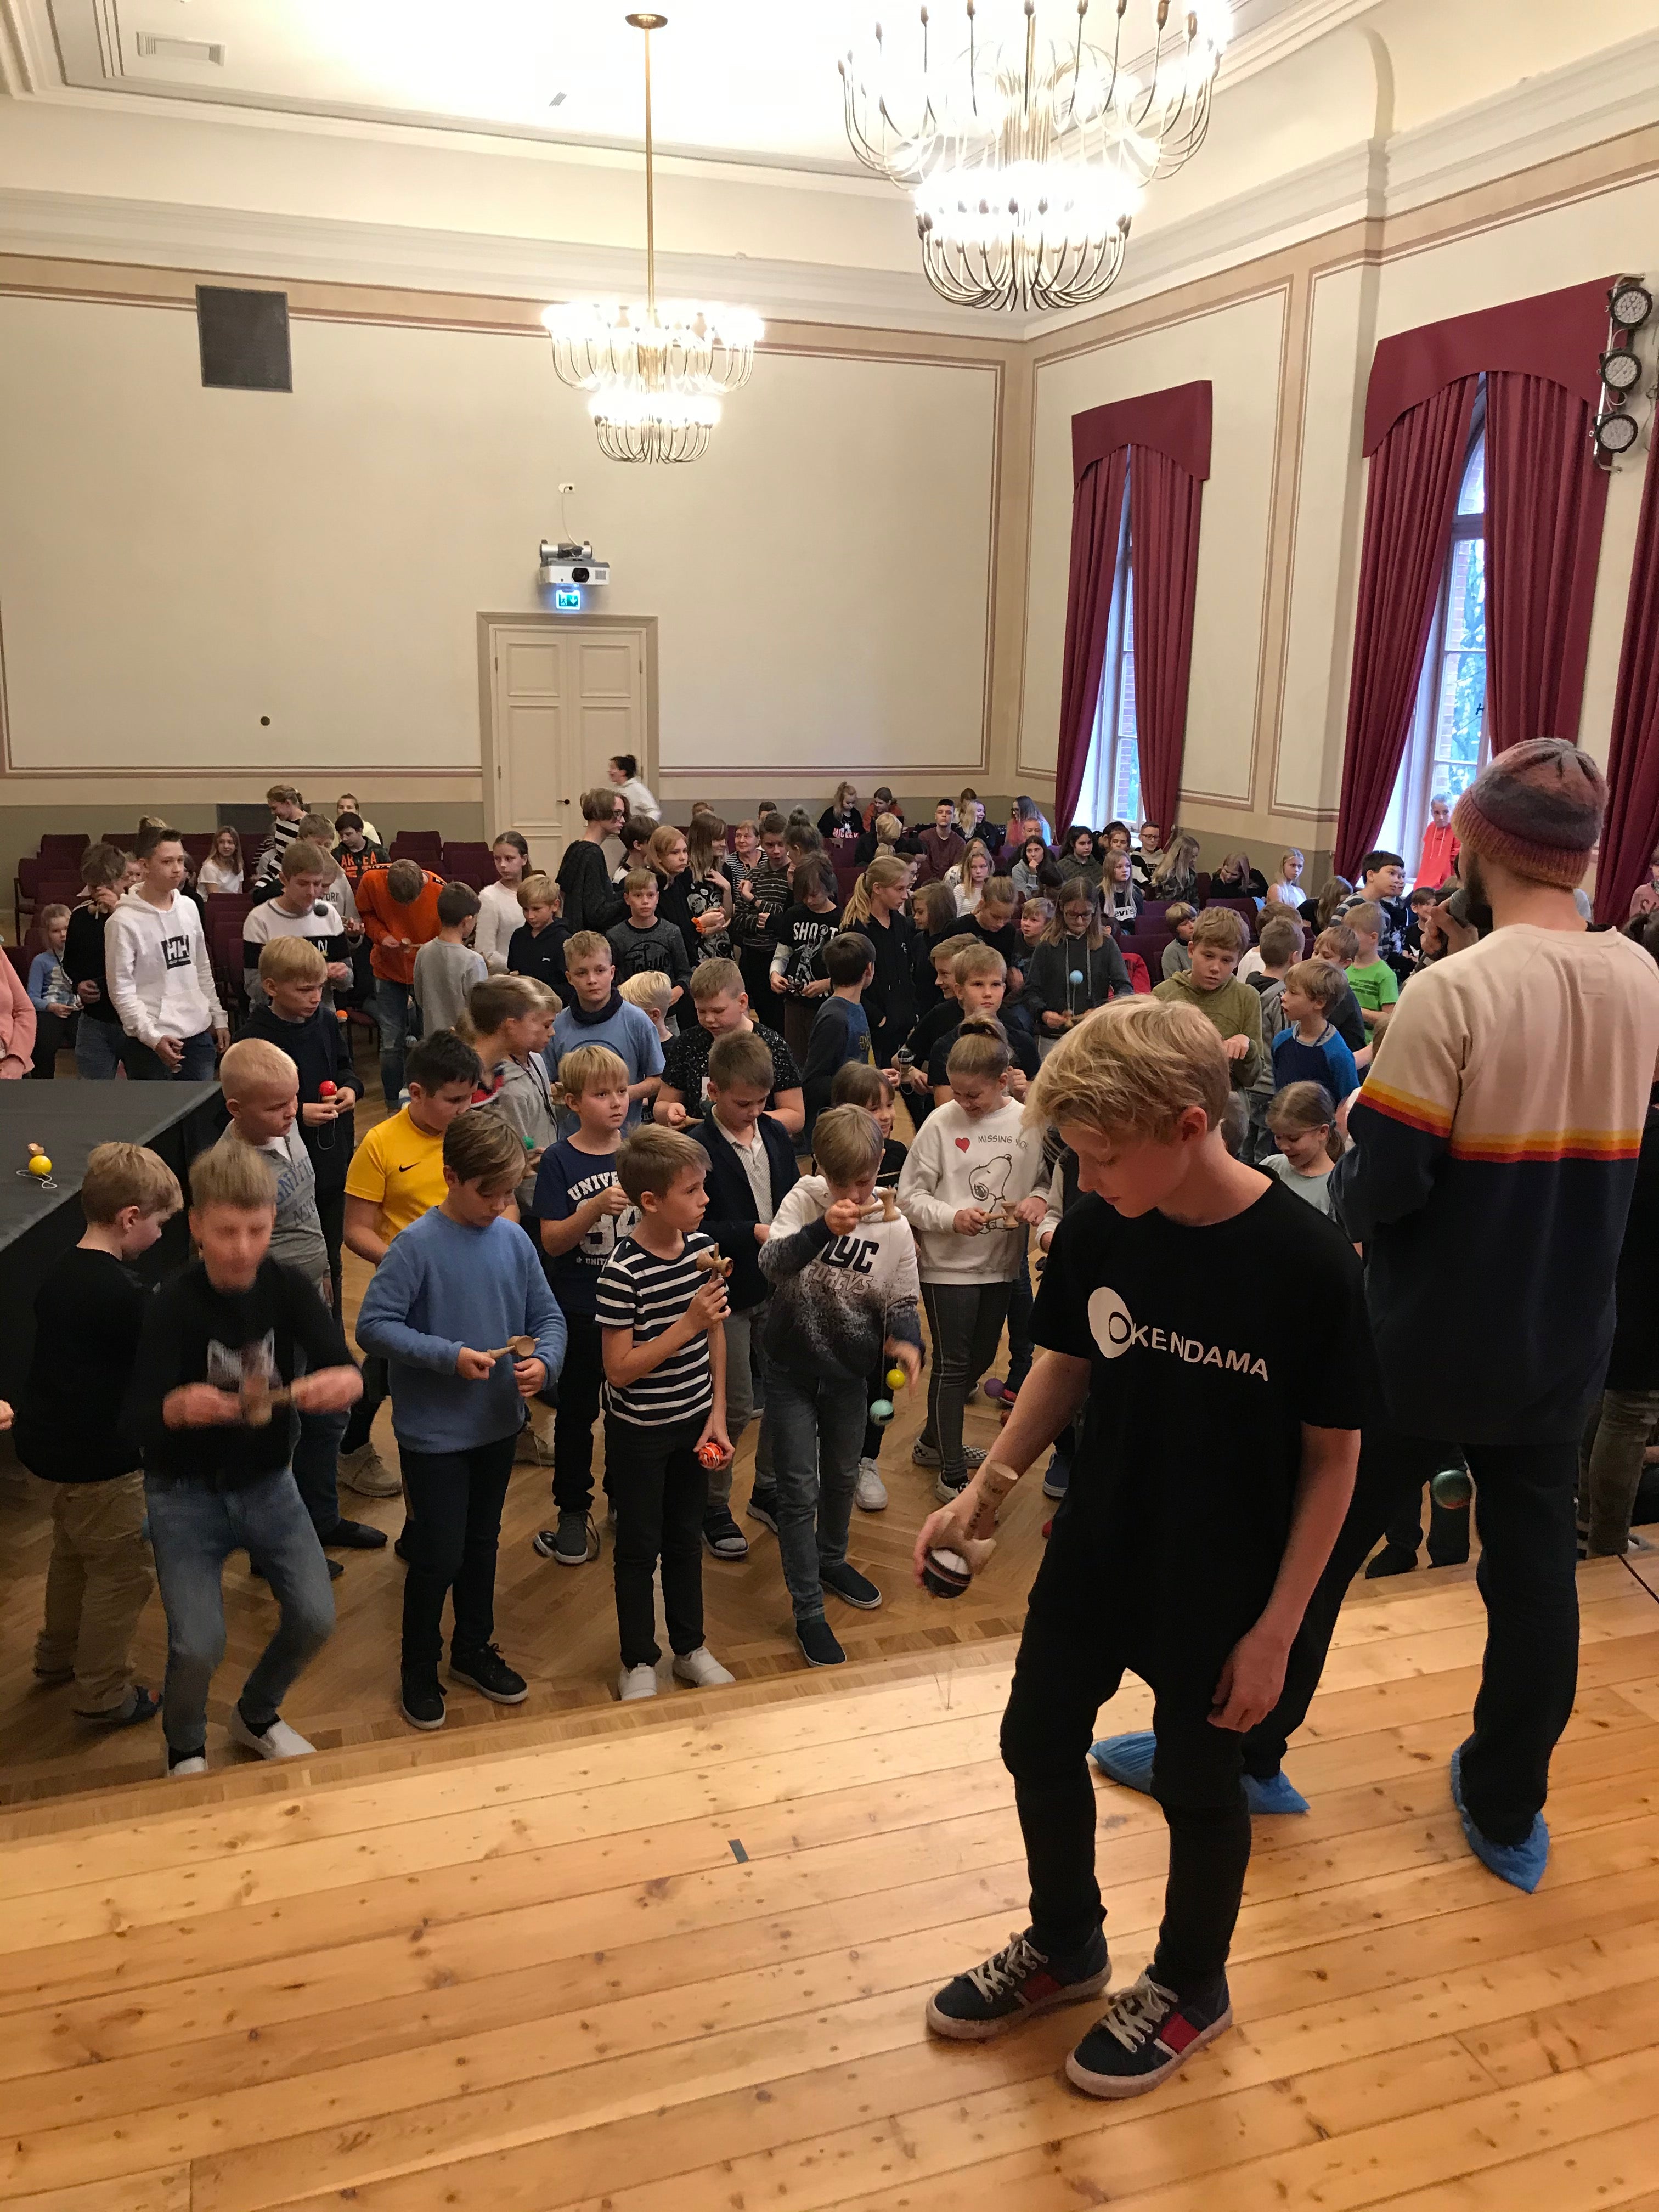 Kendama event in Pärnu with Okendama team